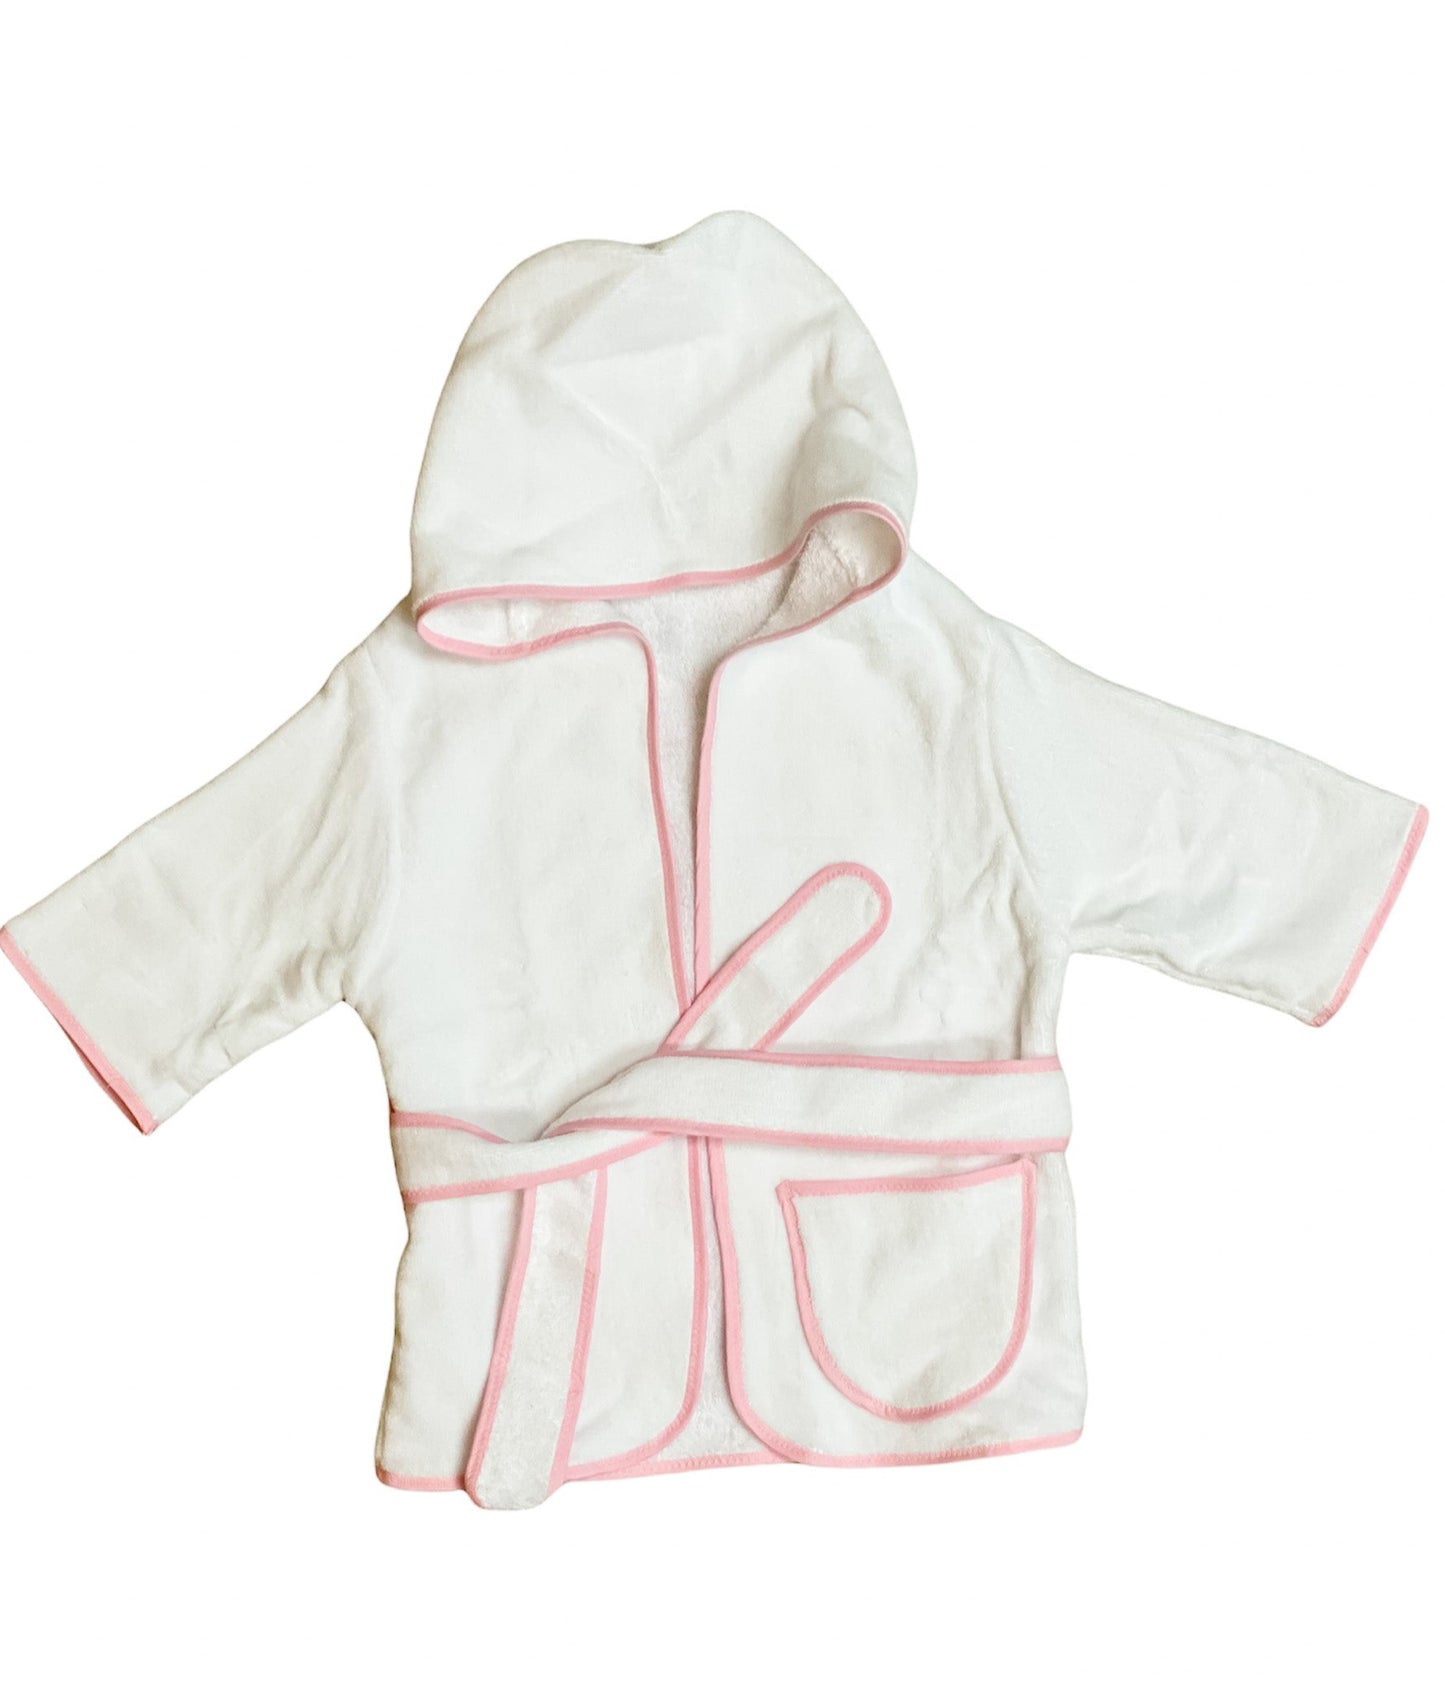 Children's Hooded Robe